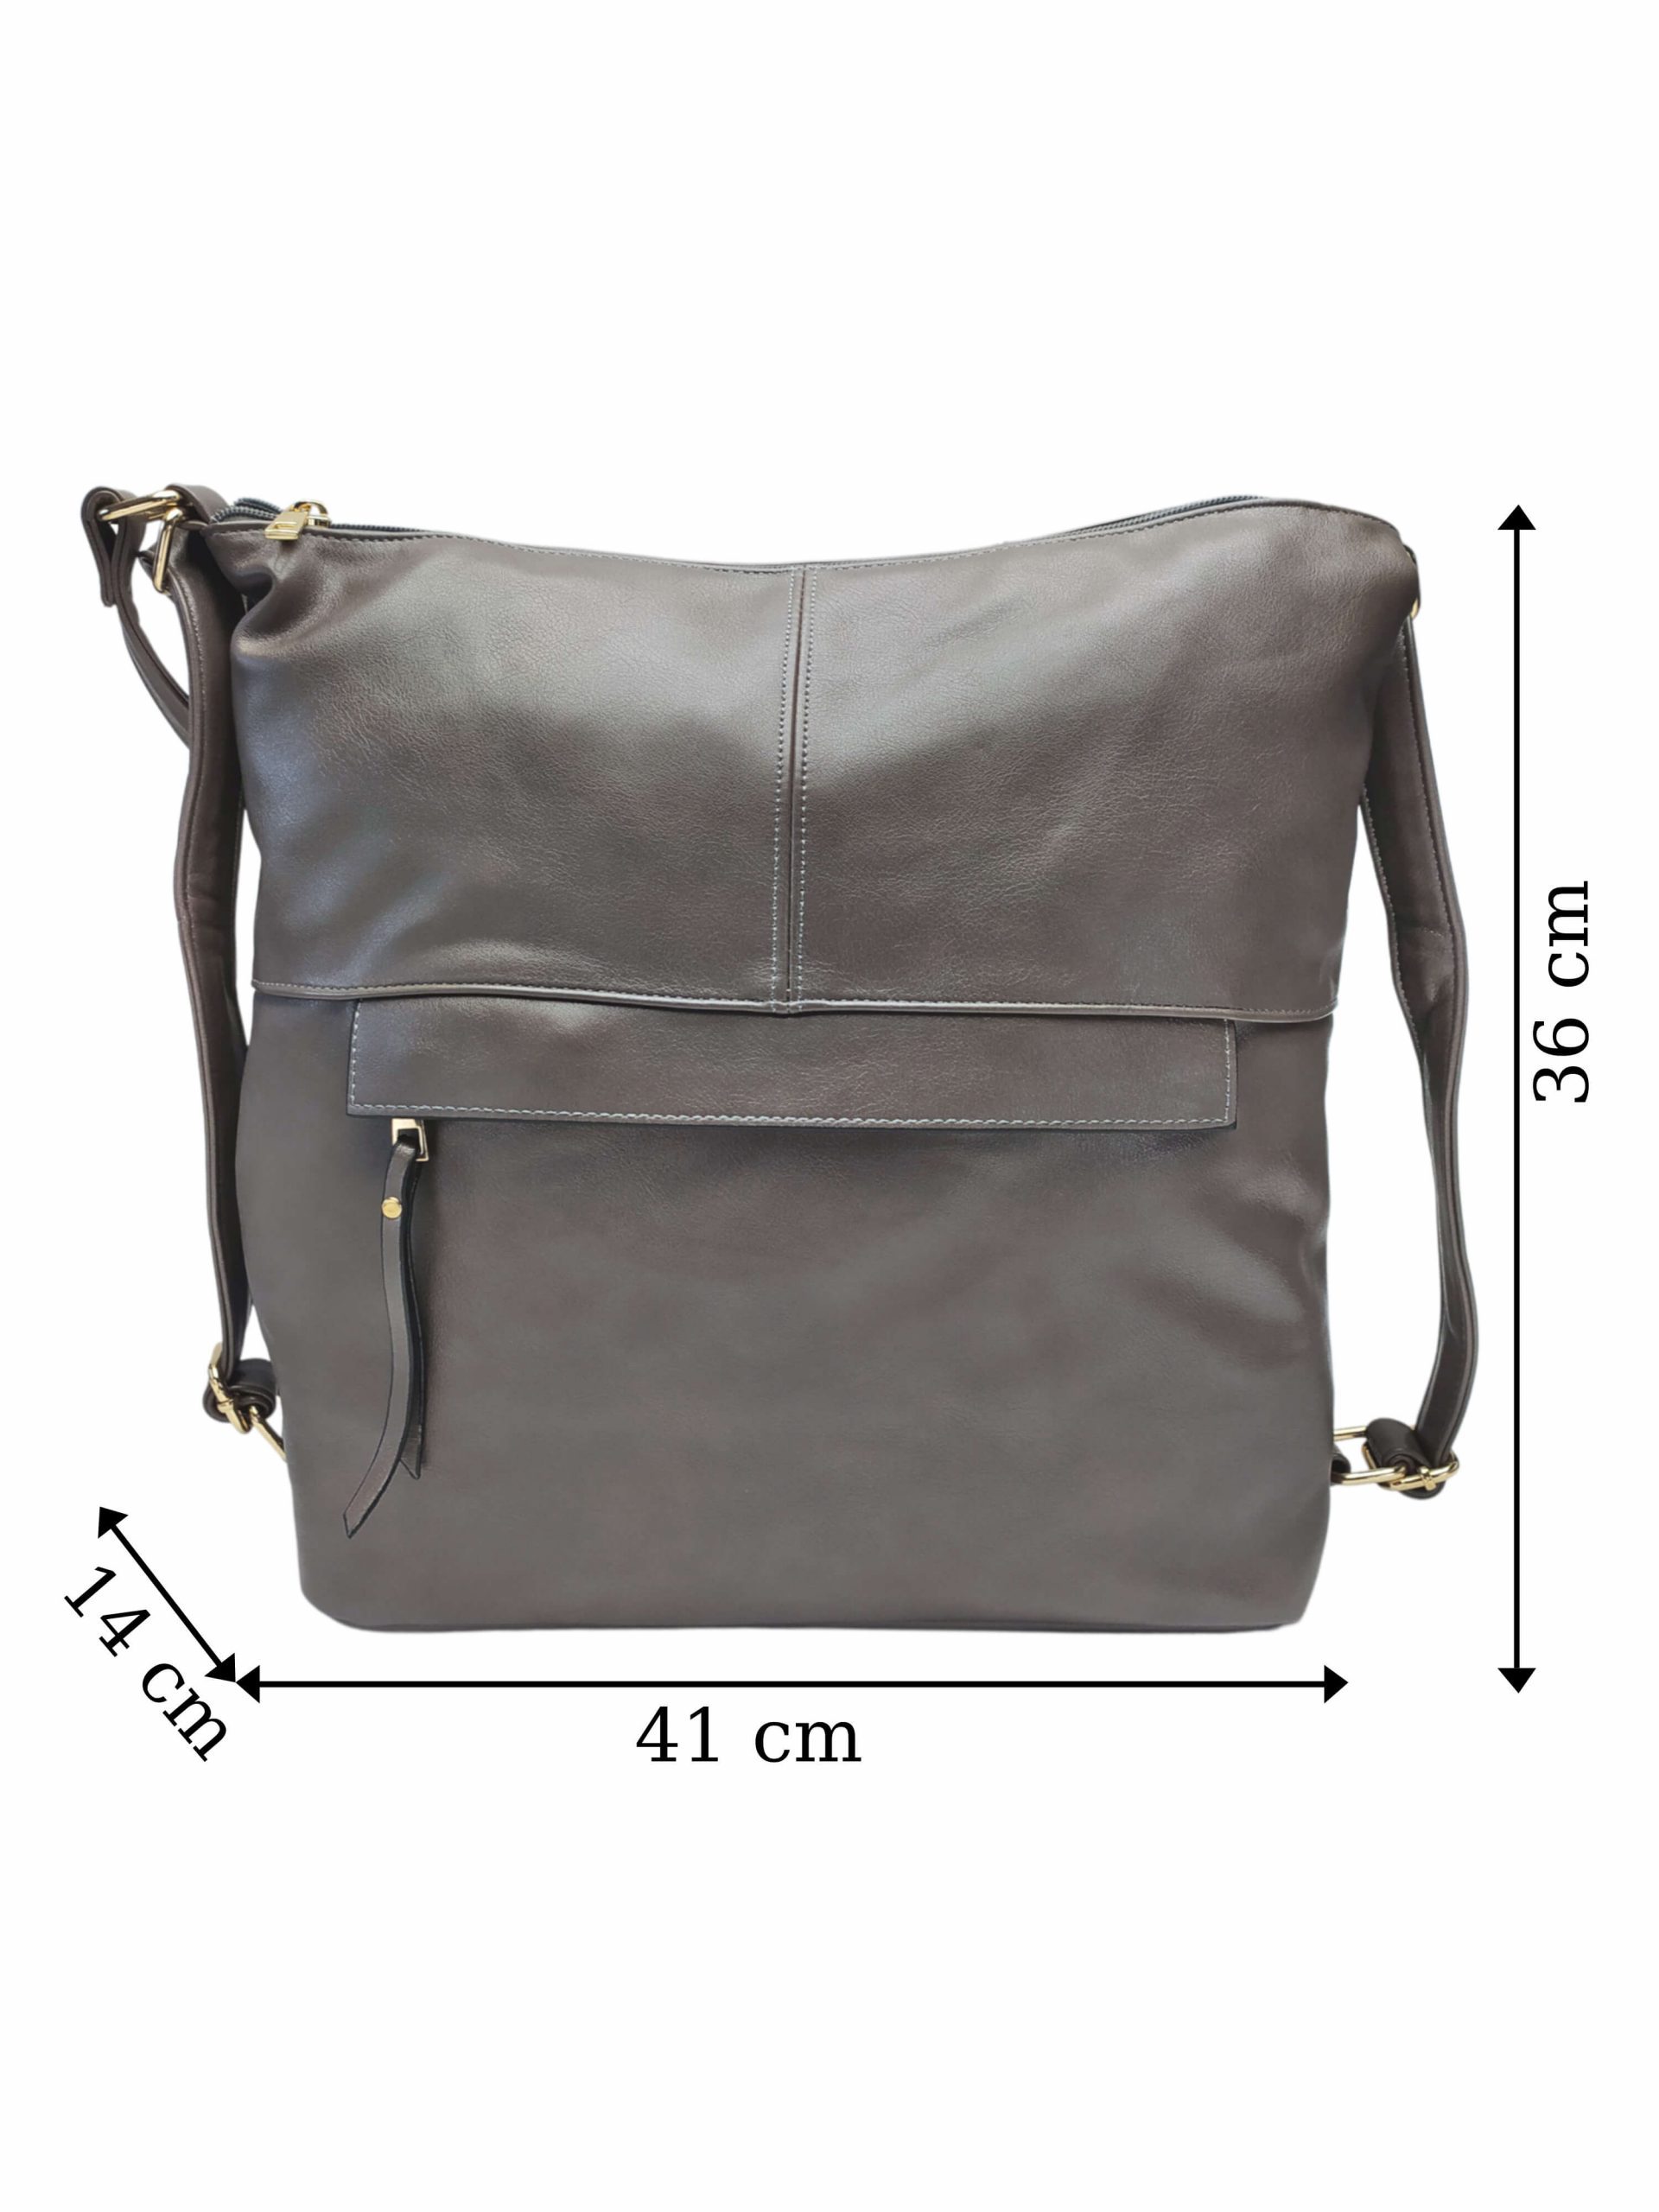 Prostorný šedohnědý kabelko-batoh 2v1 s přední kapsou, Caely, Q3071, přední strana kabelko-batohu 2v1 s rozměry